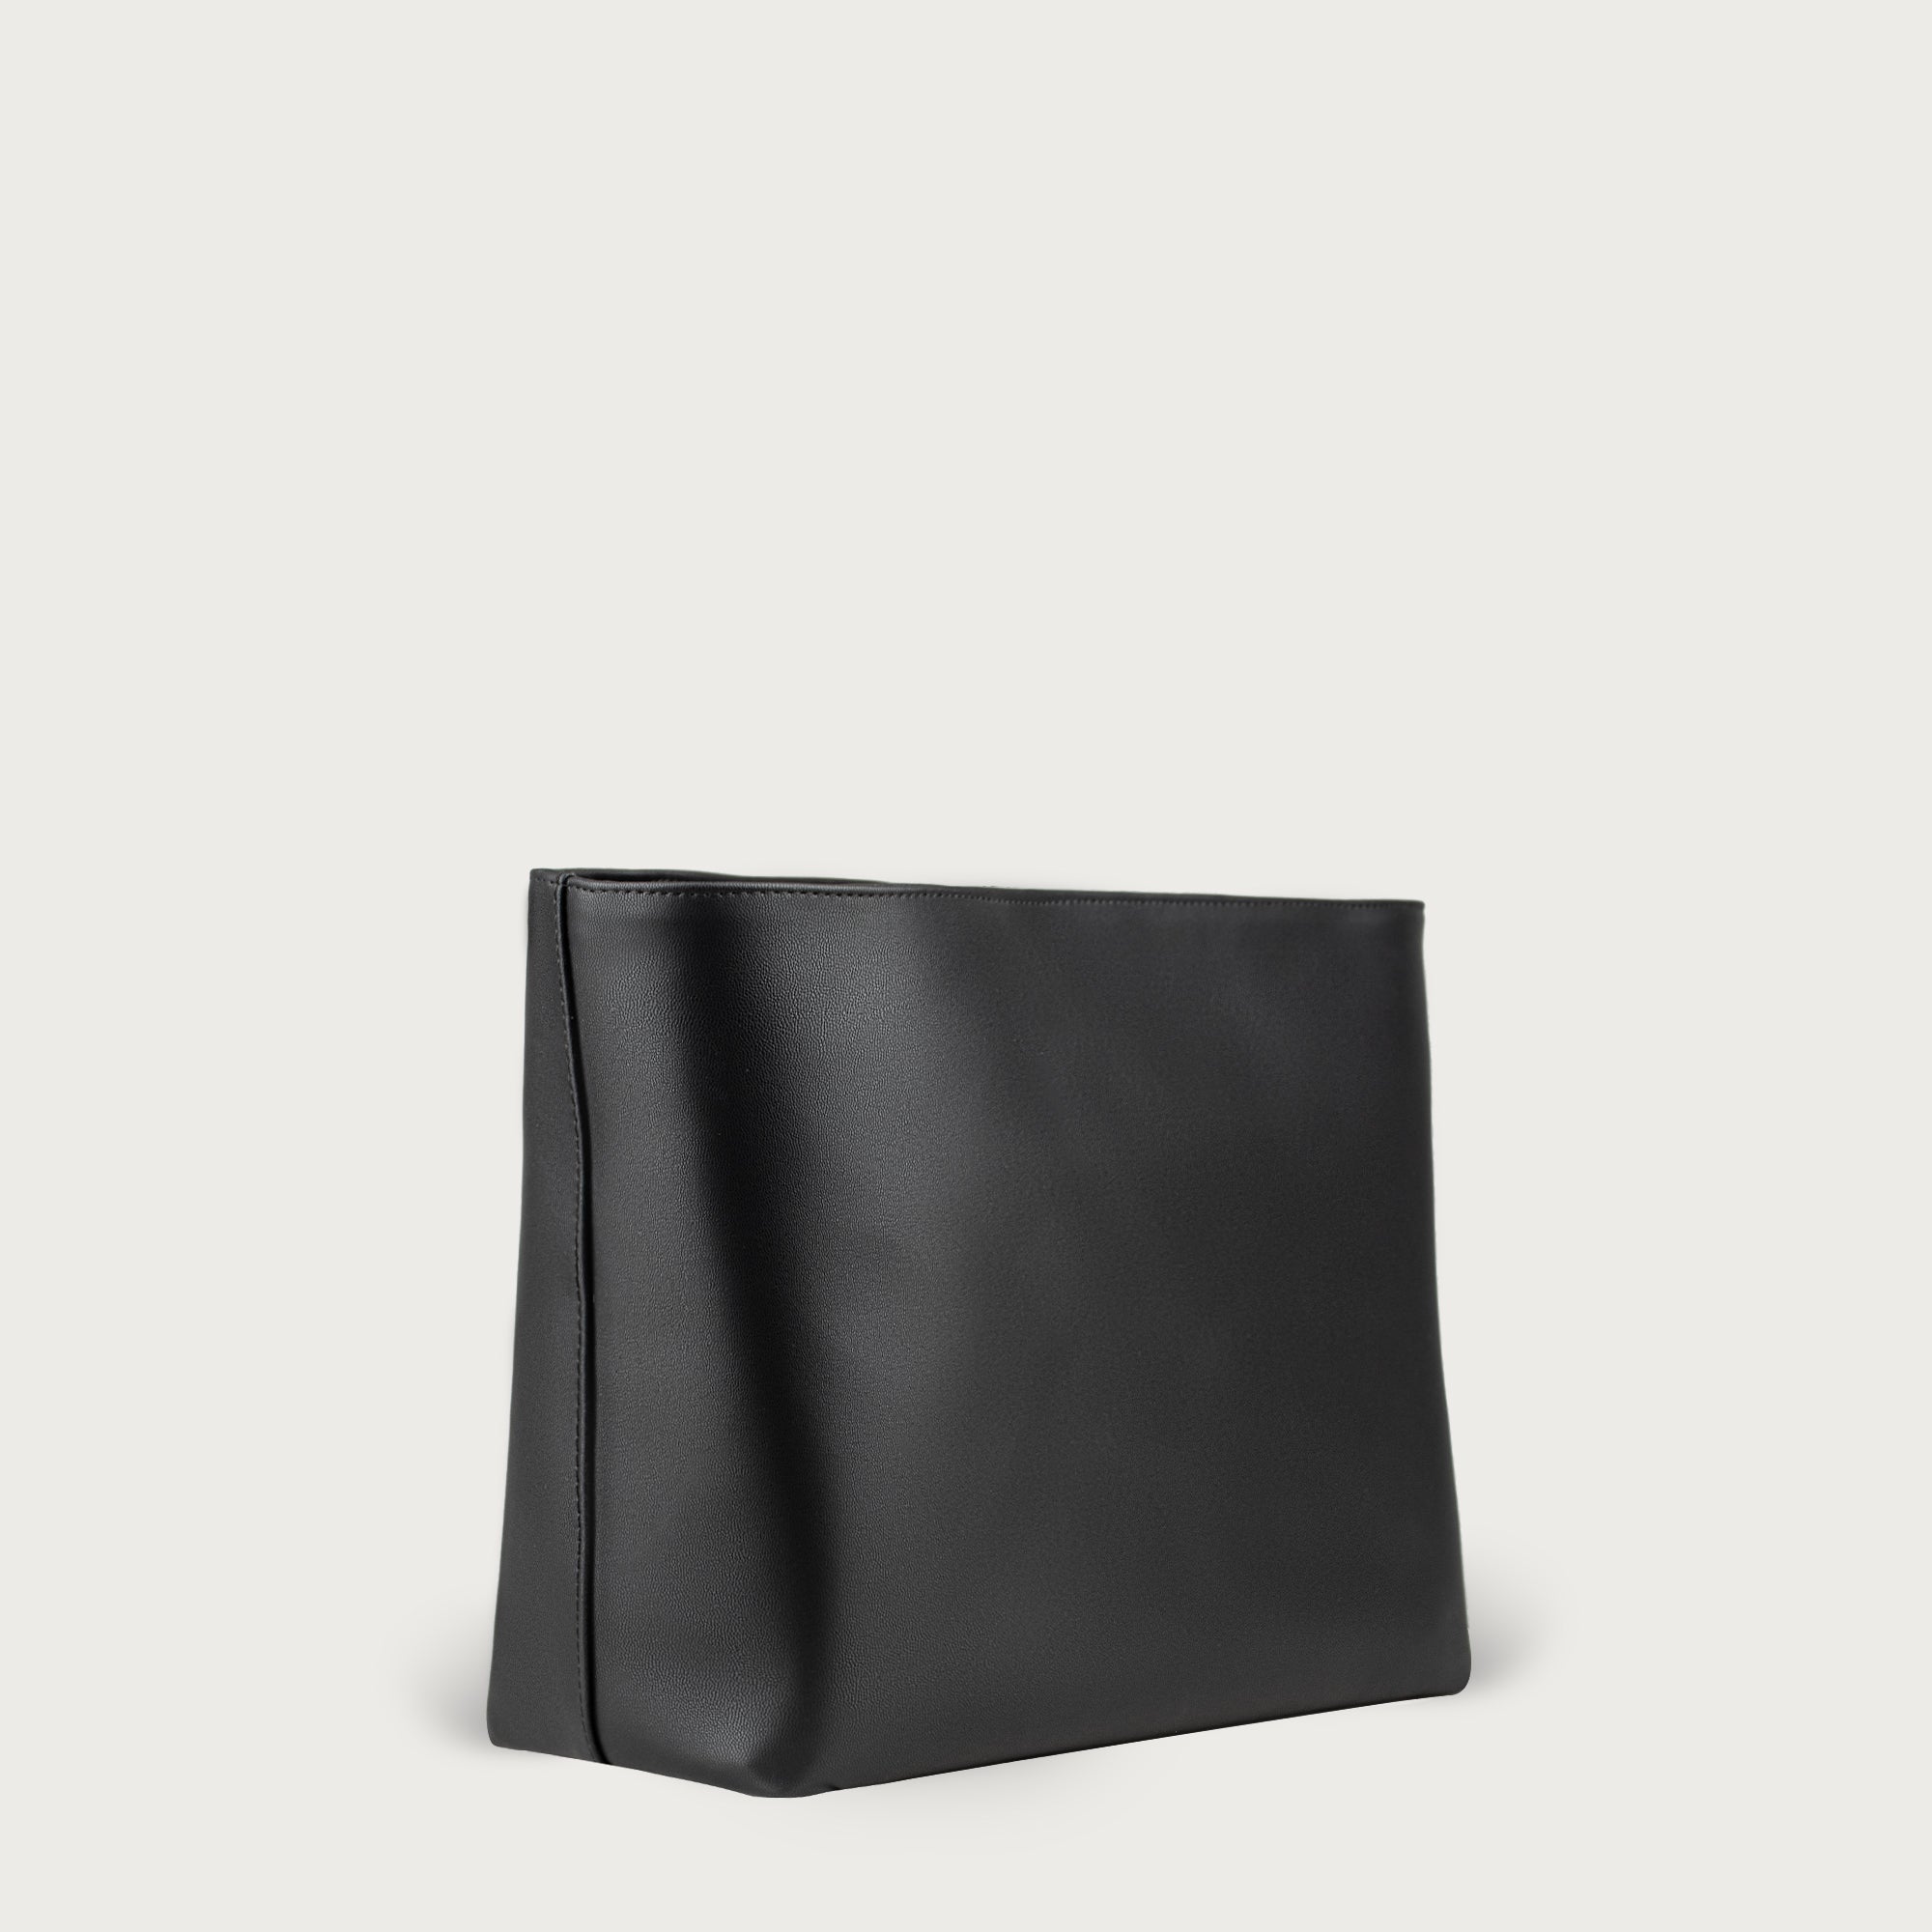  Vegan Leather Handbag Organizer in Dark Beige Color